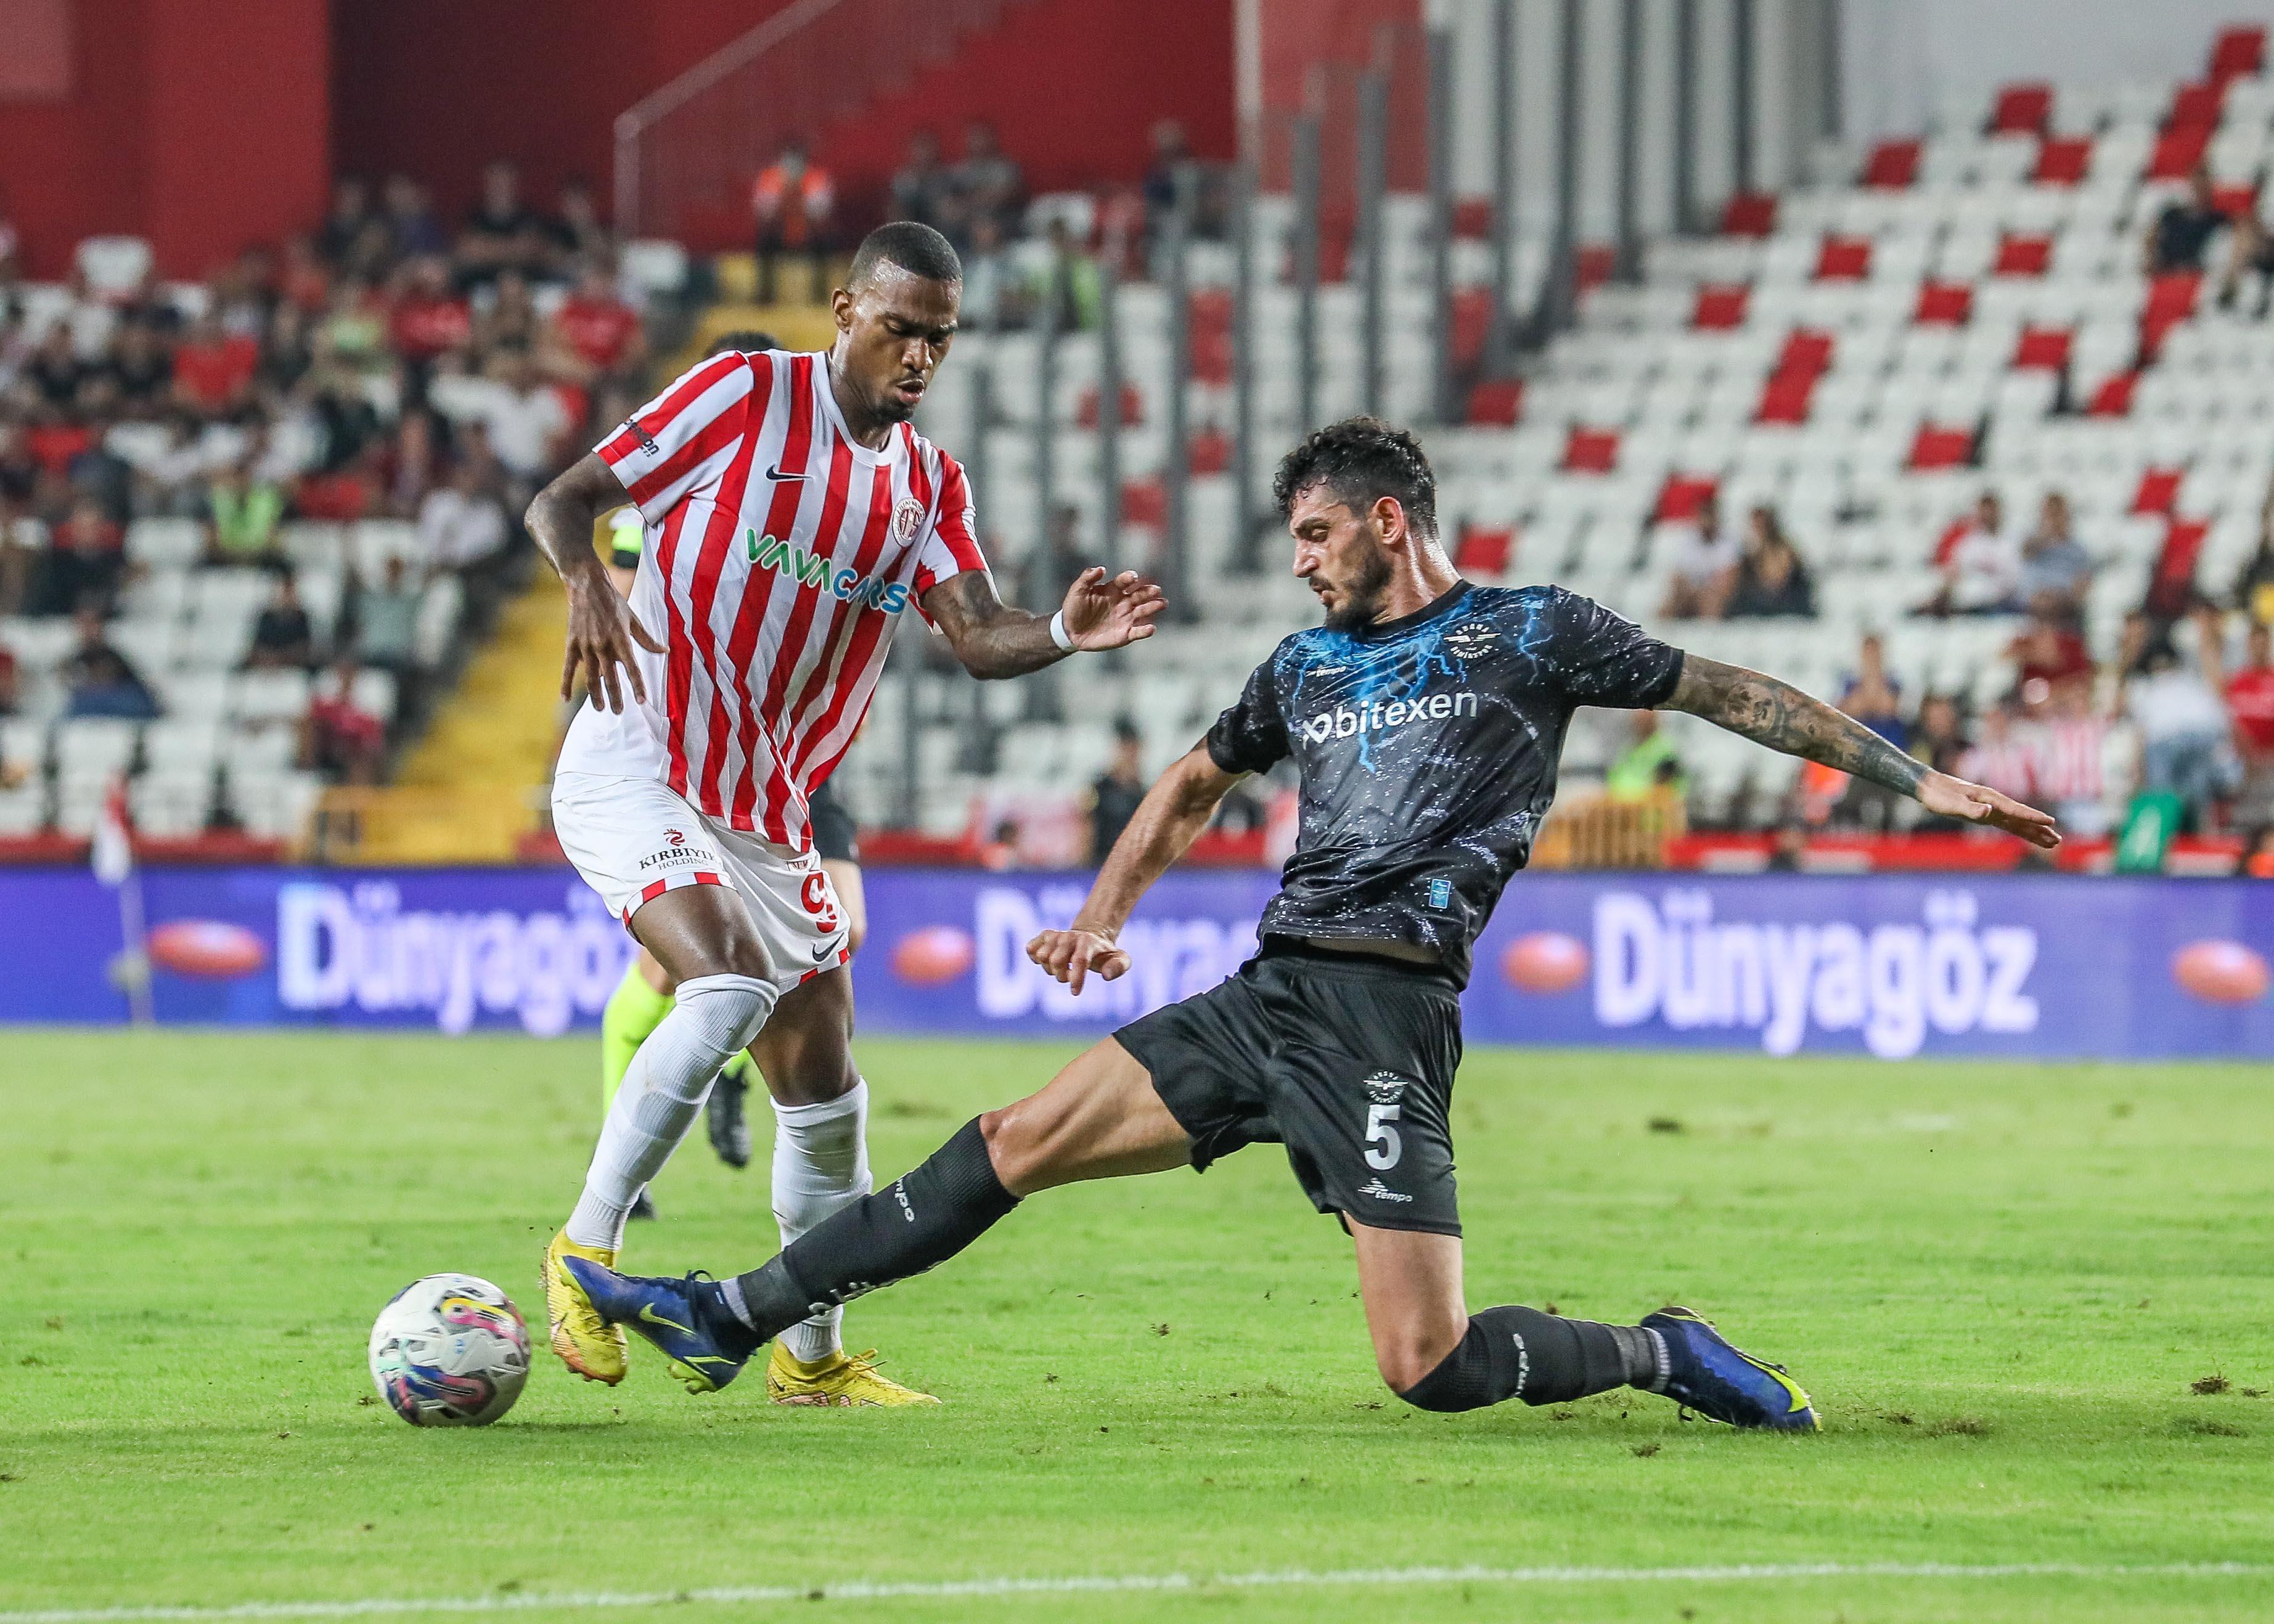 (ÖZET) Antalyaspor - Adana Demirspor maç sonucu: 0-3